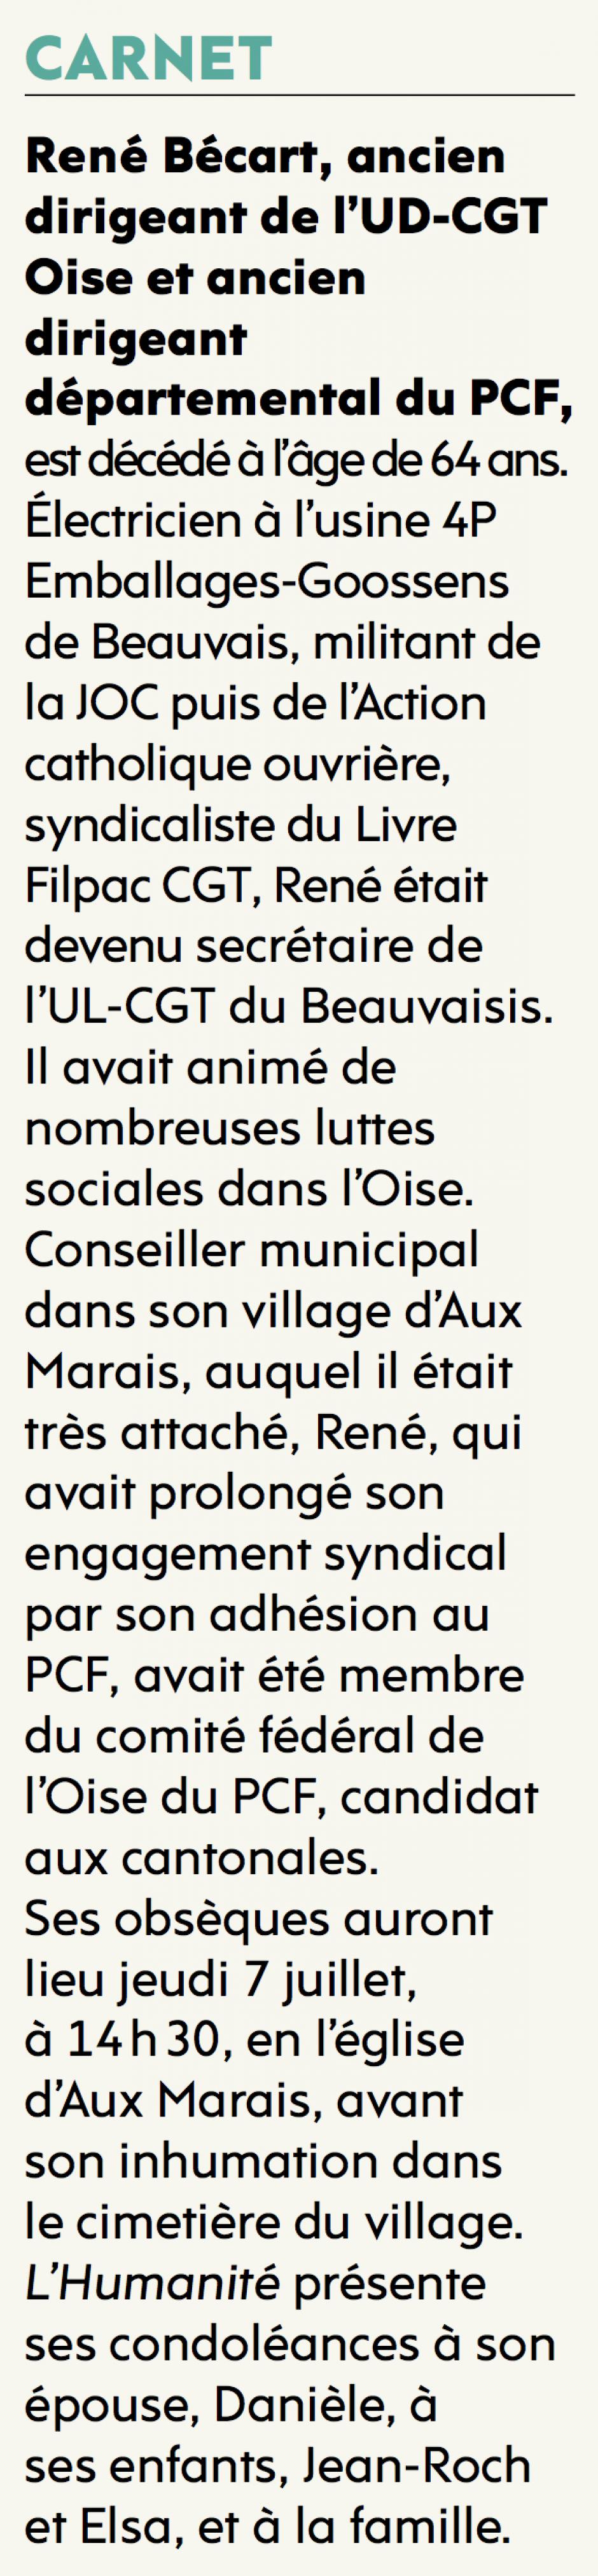 20160705-L'Huma-Aux-Marais-René Bécart, ancien dirigeant de l'UD CGT Oise et ancien dirigeant départemental du PCF